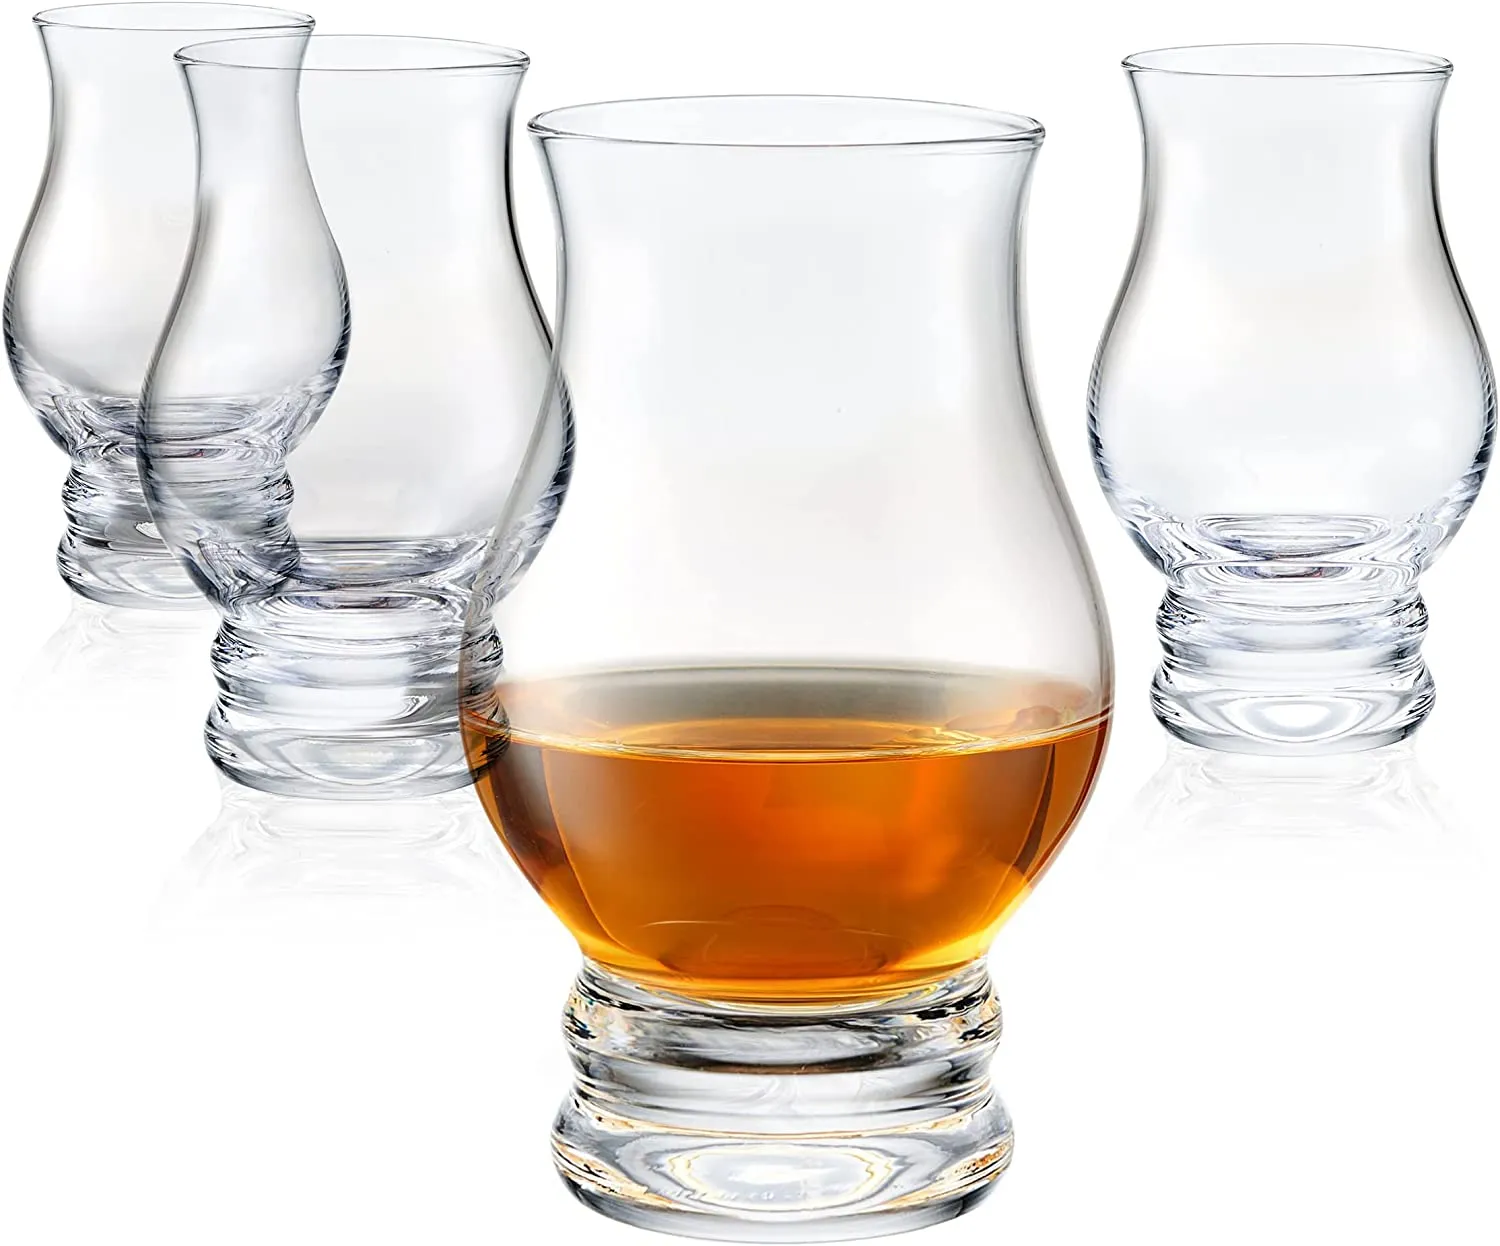 Kristal handgemaakt glas geurglas whiskyglas proefbeker grote buik buitenlandse wijnbeker tulp cognac beker